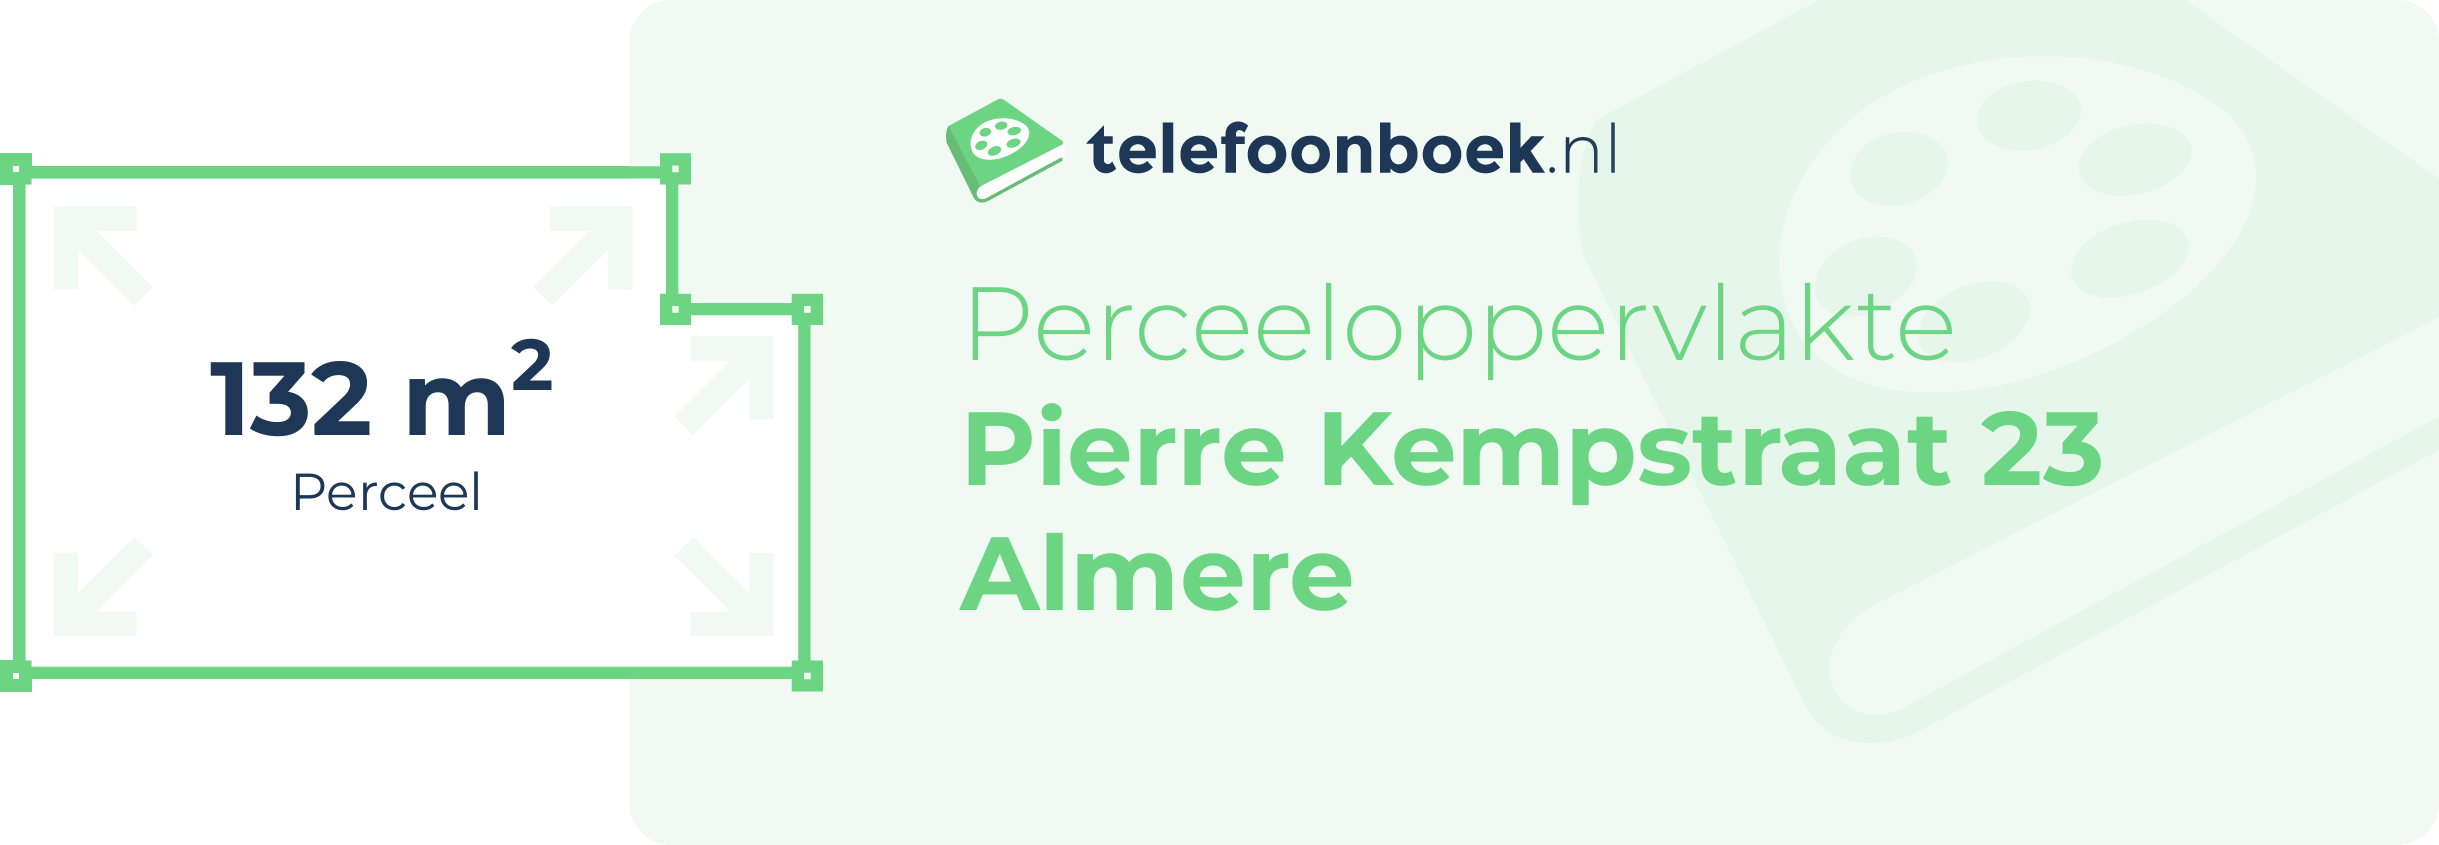 Perceeloppervlakte Pierre Kempstraat 23 Almere